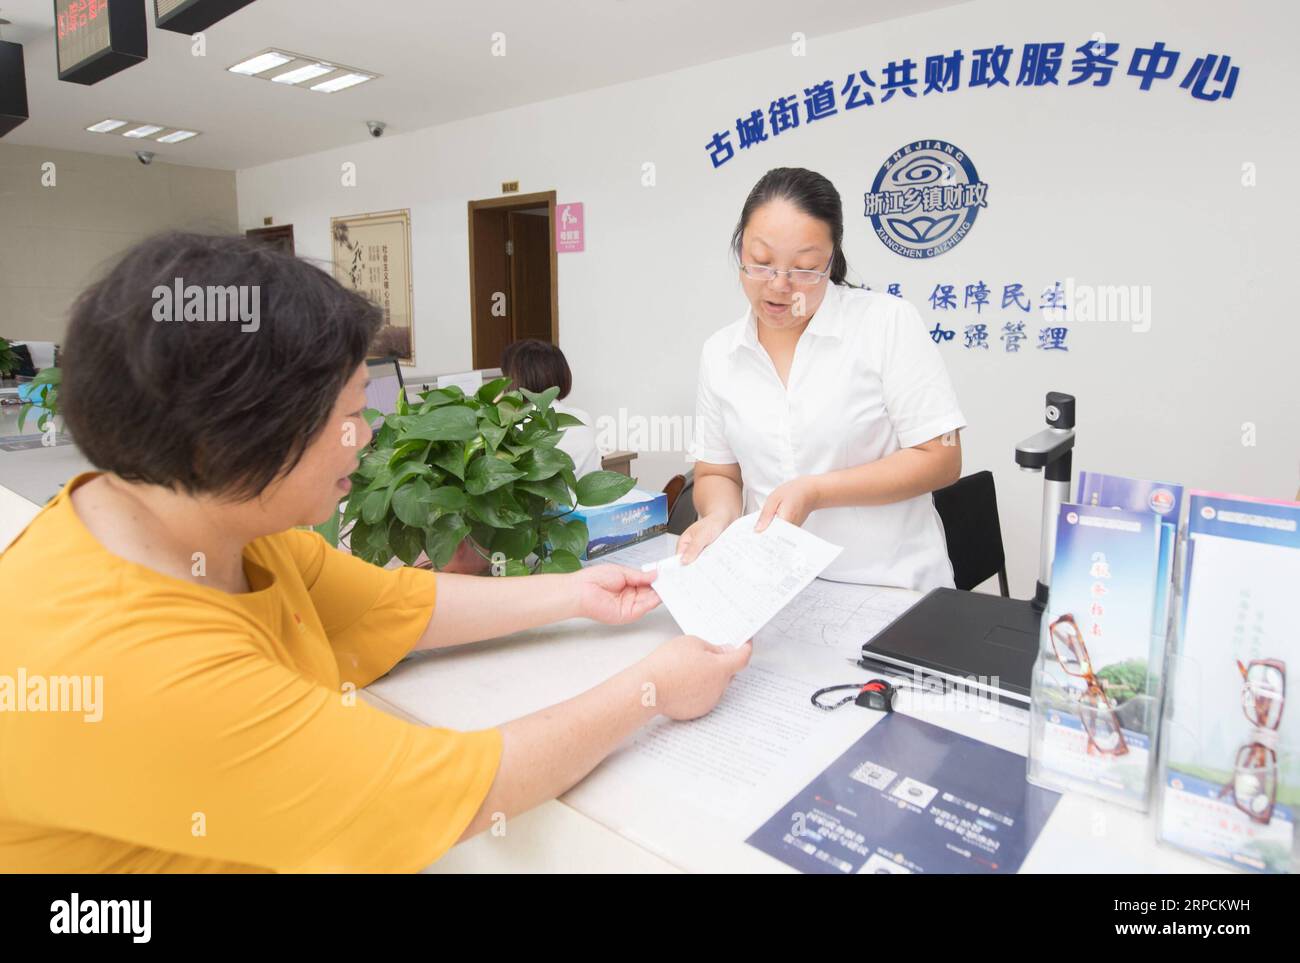 (190708) -- LINHAI, 8 de julio de 2019 -- Fang Huafen (izq.), un funcionario de la comunidad de Lucheng, solicita un fondo de ayuda para Wu Yuanmiao en un centro de servicio en la ciudad de Linhai, provincia de Zhejiang, al este de China, el 27 de junio de 2019. Wu Yuanmiao, cuando trabajaba como peluquero, estableció una regla para sí mismo para proporcionar servicio gratuito un día a la semana a los ancianos, los discapacitados y los soldados. Después de haber servido a más de 60.000 clientes durante 17 año, es el ganador de varios premios, incluida la Medalla Laboral de mayo de 1. Sin embargo, diagnosticada con enfermedad cerebral, la condición de Wu ha estado peor desde 2008. En 2014, experimentó un tiempo difícil en el correr Foto de stock